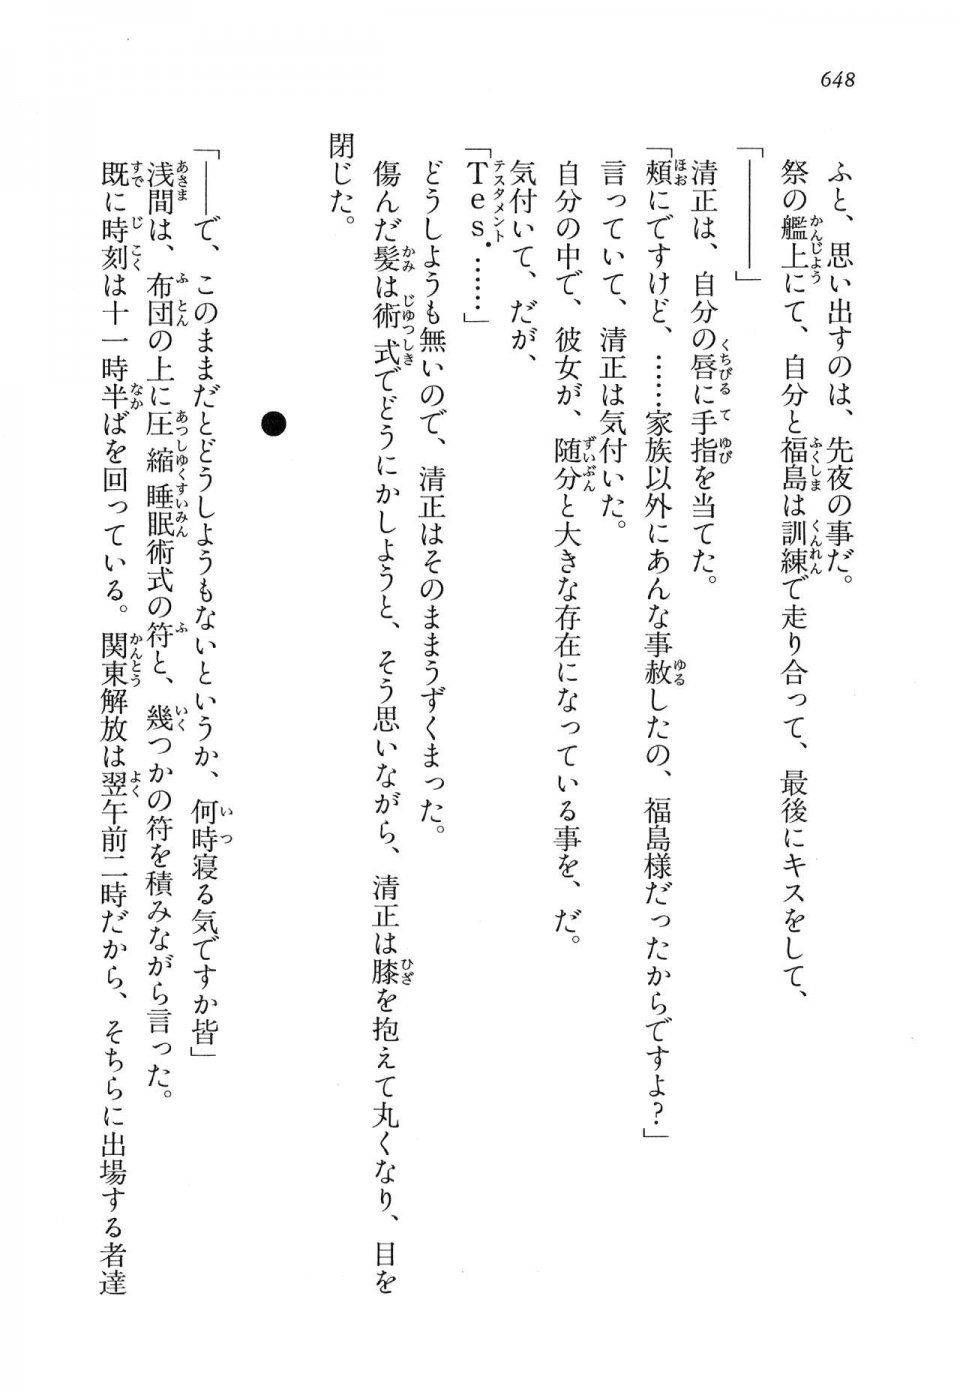 Kyoukai Senjou no Horizon LN Vol 16(7A) - Photo #648